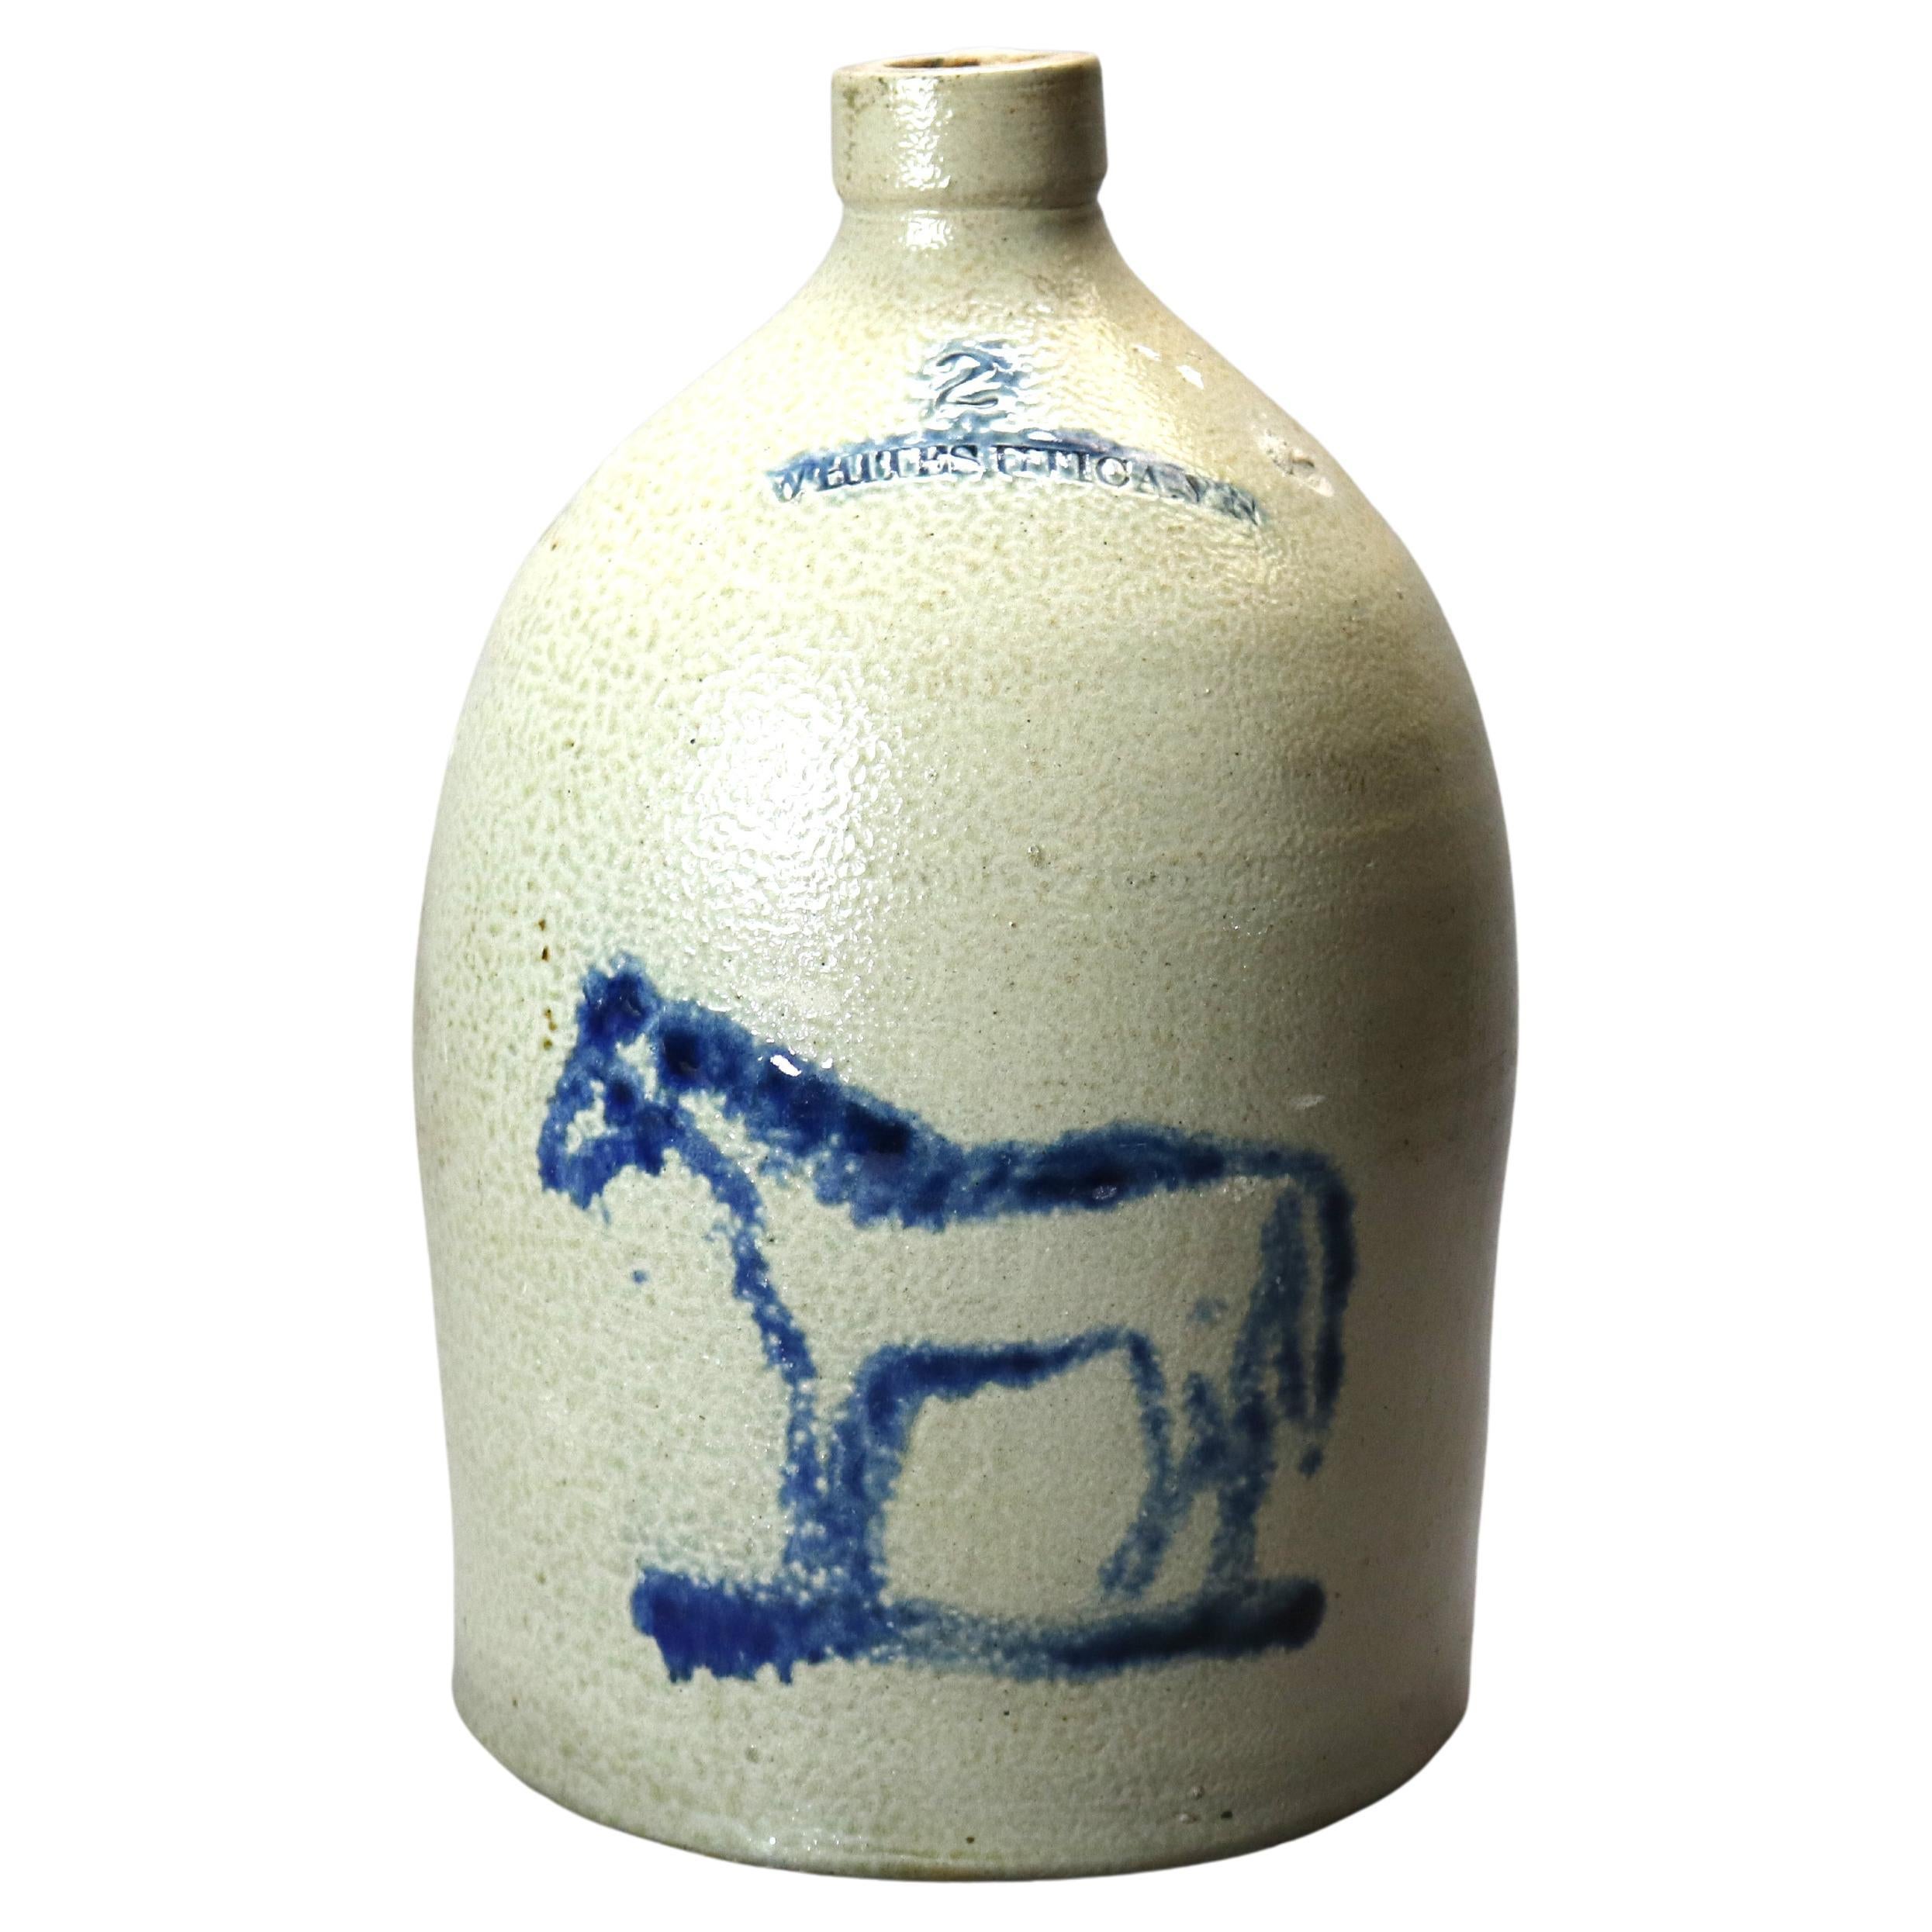 Rare Antique Whites Utica Salt Glaze Stoneware Jug, Blue Decorated Horse, 19th C